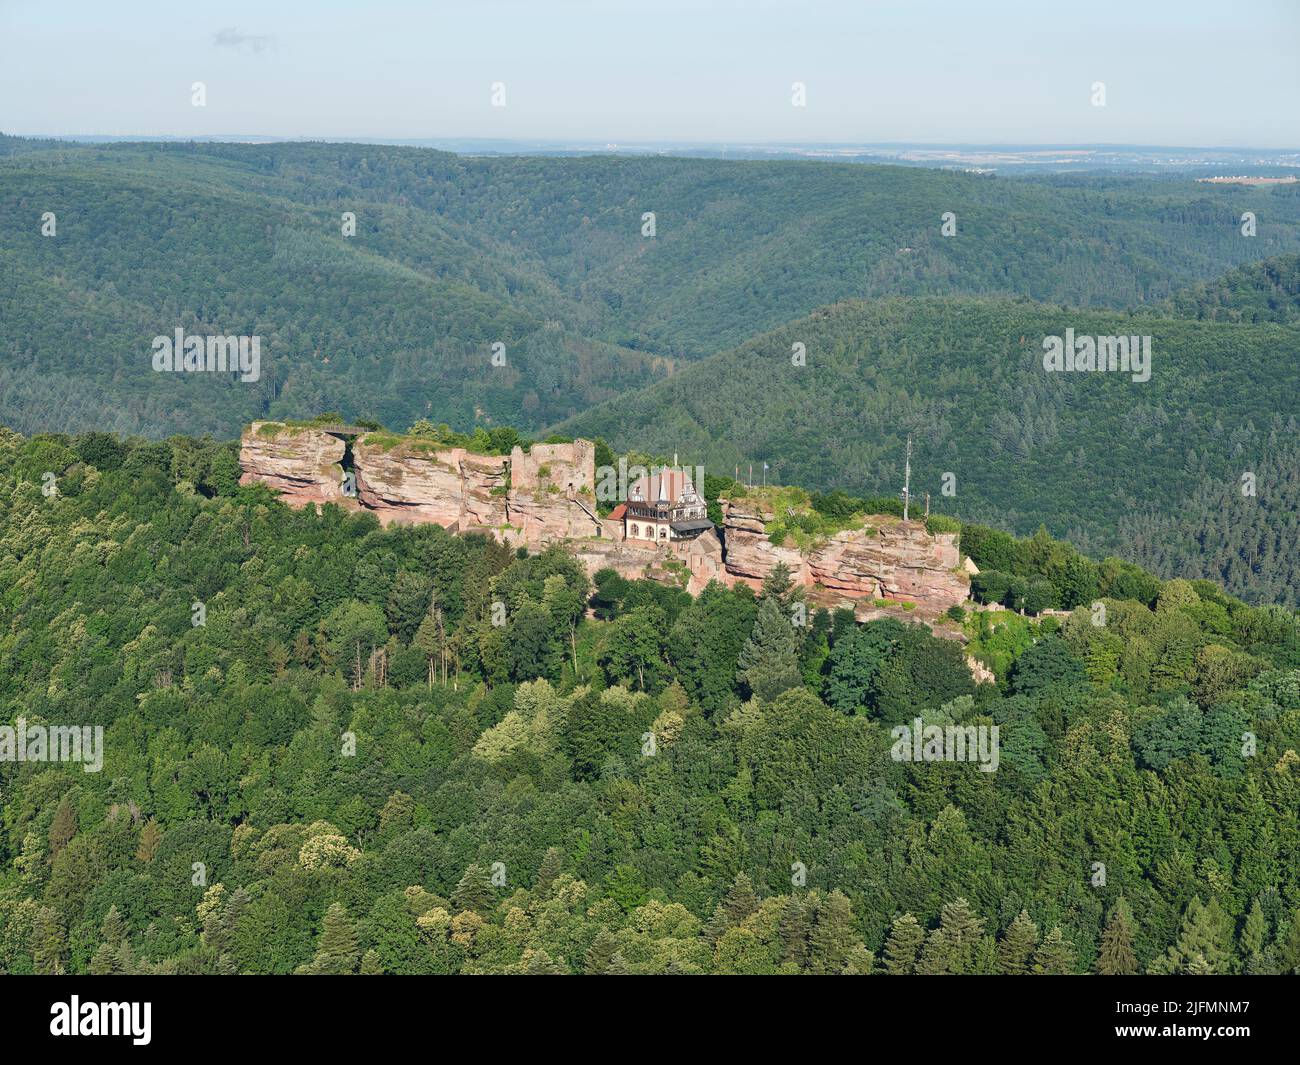 VUE AÉRIENNE. Ruines d'un château médiéval construit sur un affleurement de grès sur les montagnes de l'est des Vosges. Château du Haut-Barr, Saverne, Alsace, France. Banque D'Images